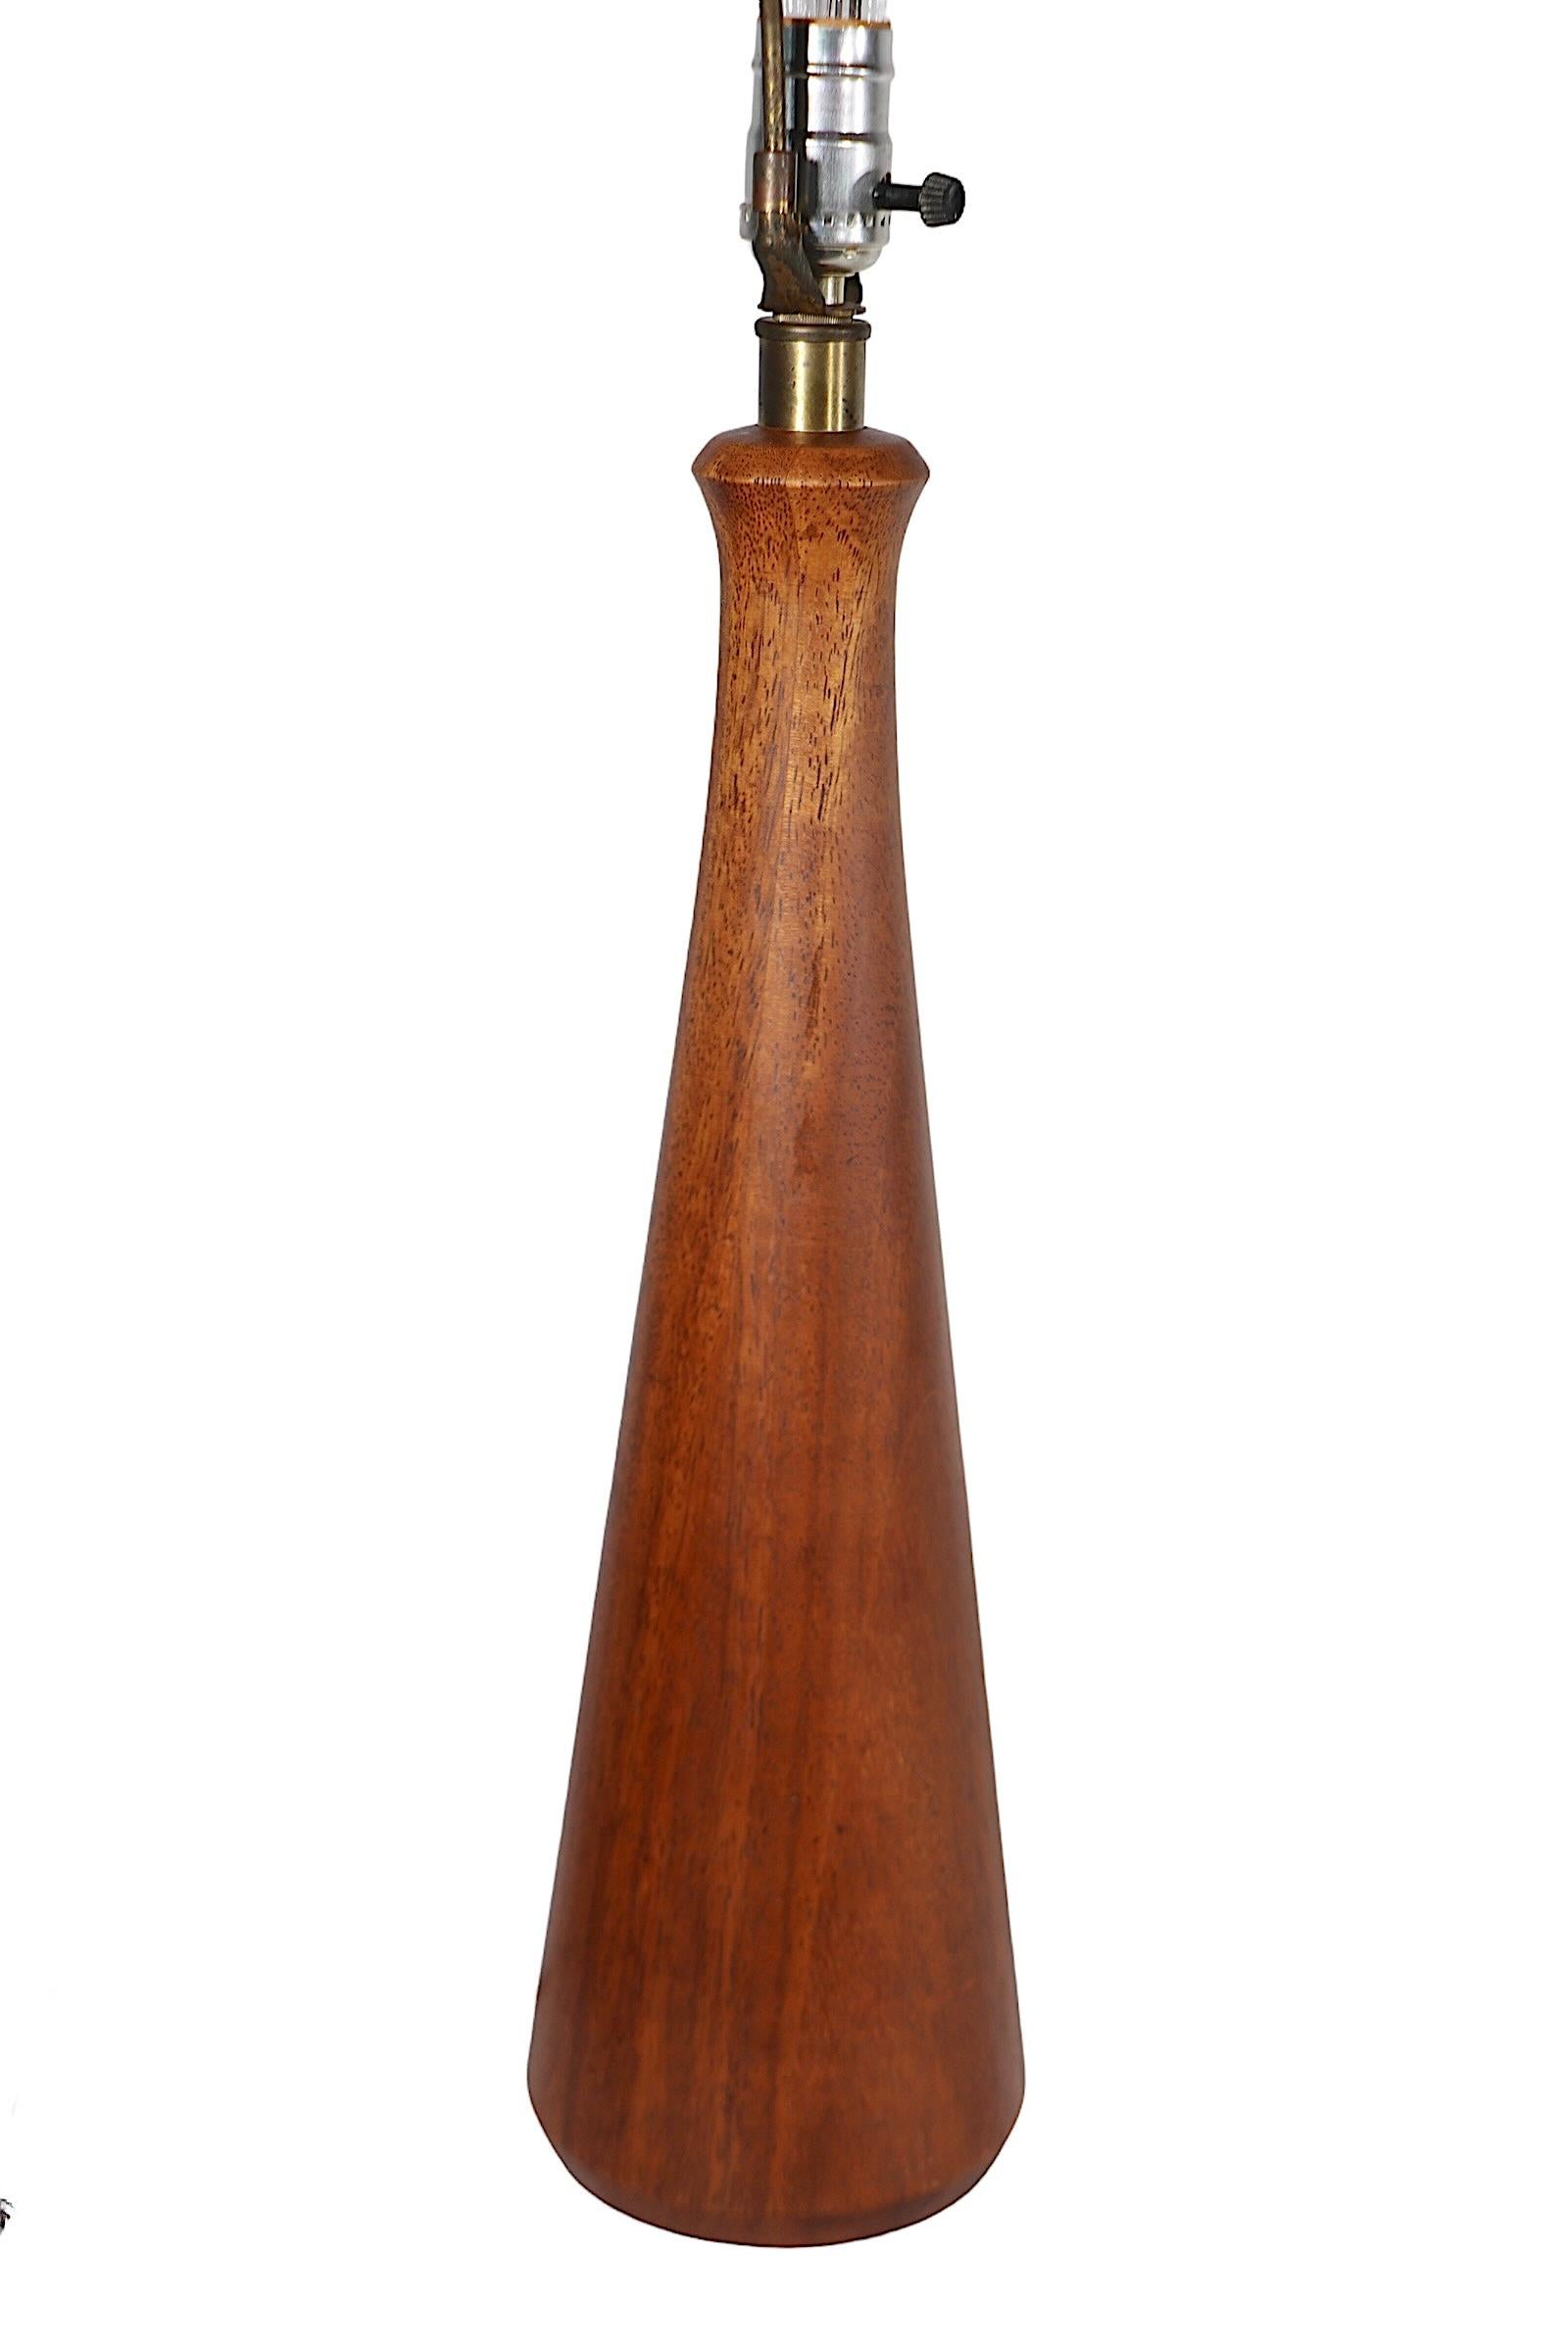 Lampe de table en bois architectural sophistiqué, en bois massif ( probablement du noyer )  Le corps est composé d'un col étroit au sommet et qui s'élargit vers la base. Nous pensons que cette lampe a été fabriquée aux Etats-Unis, dans le style